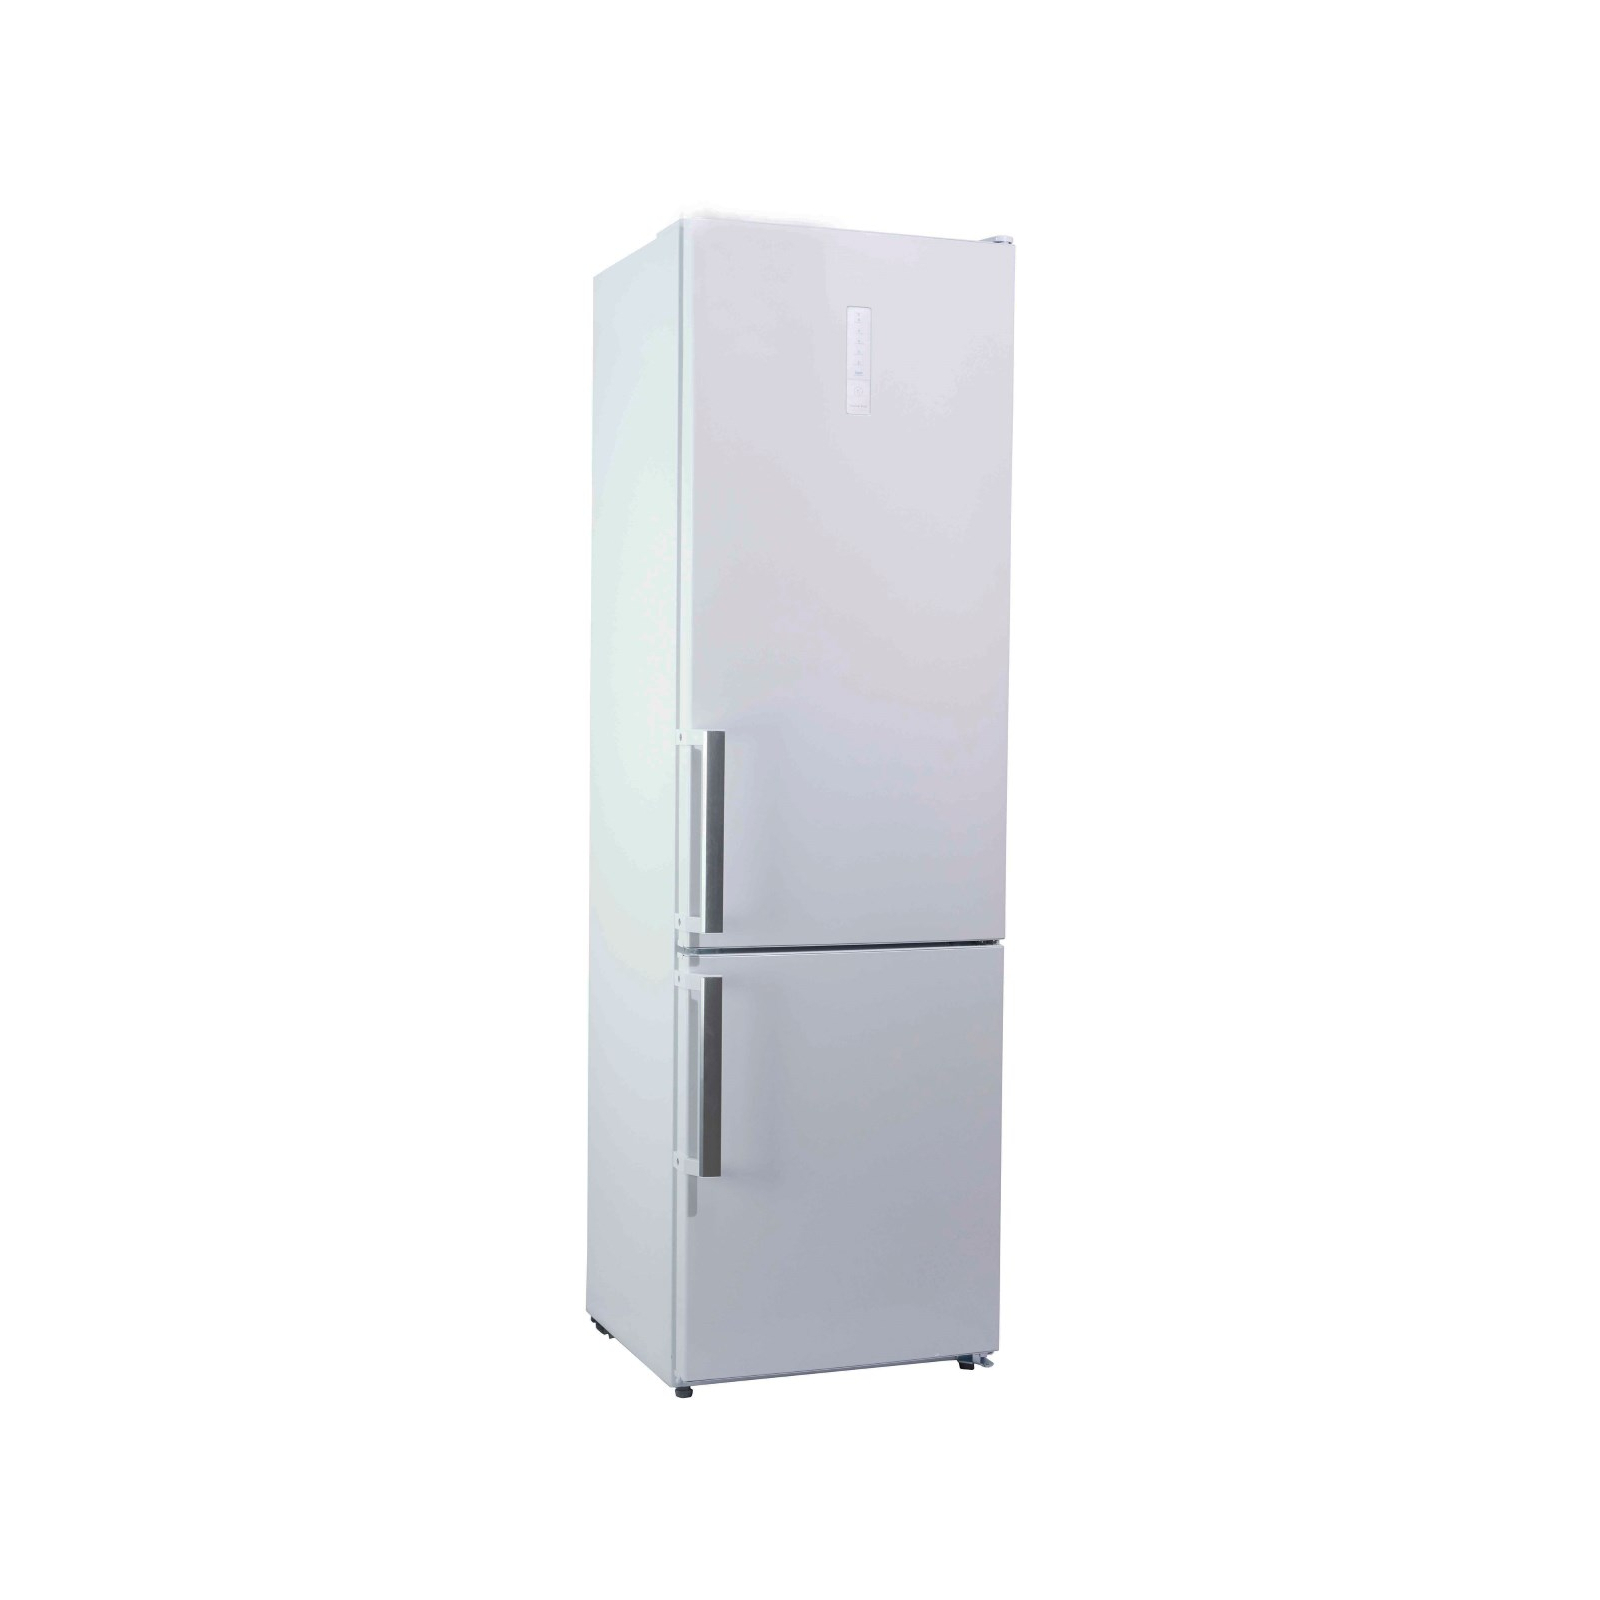 Холодильник Smart BM360WAW